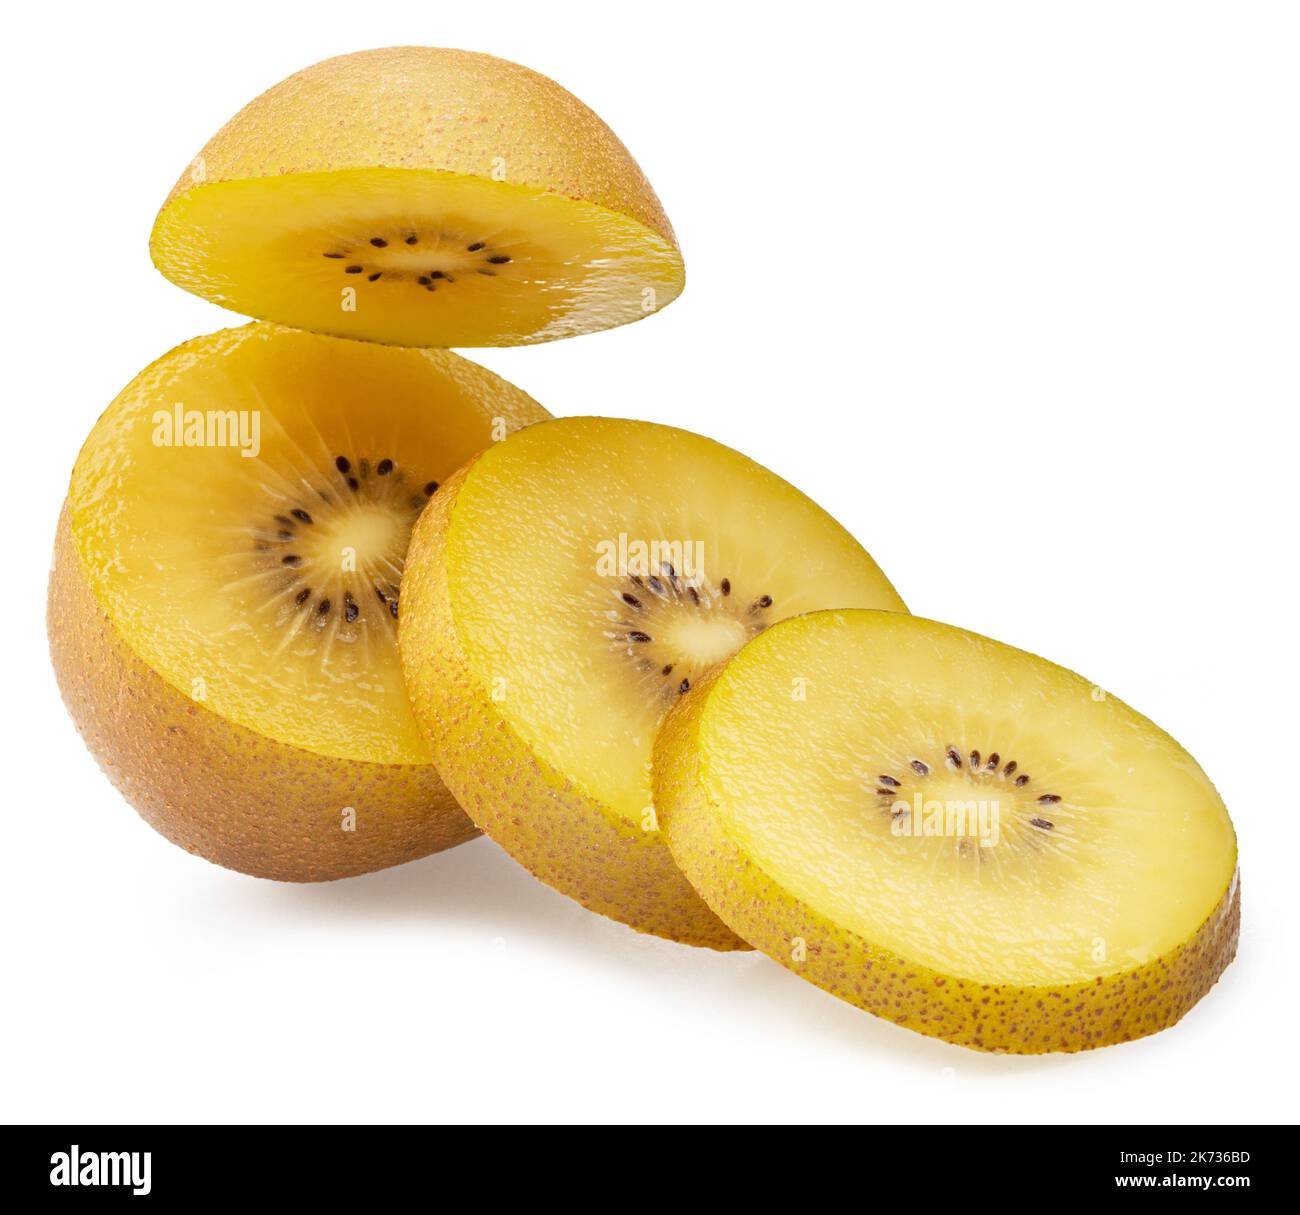 Golden kiwi fruit slices isolated on white background. Stock Photo